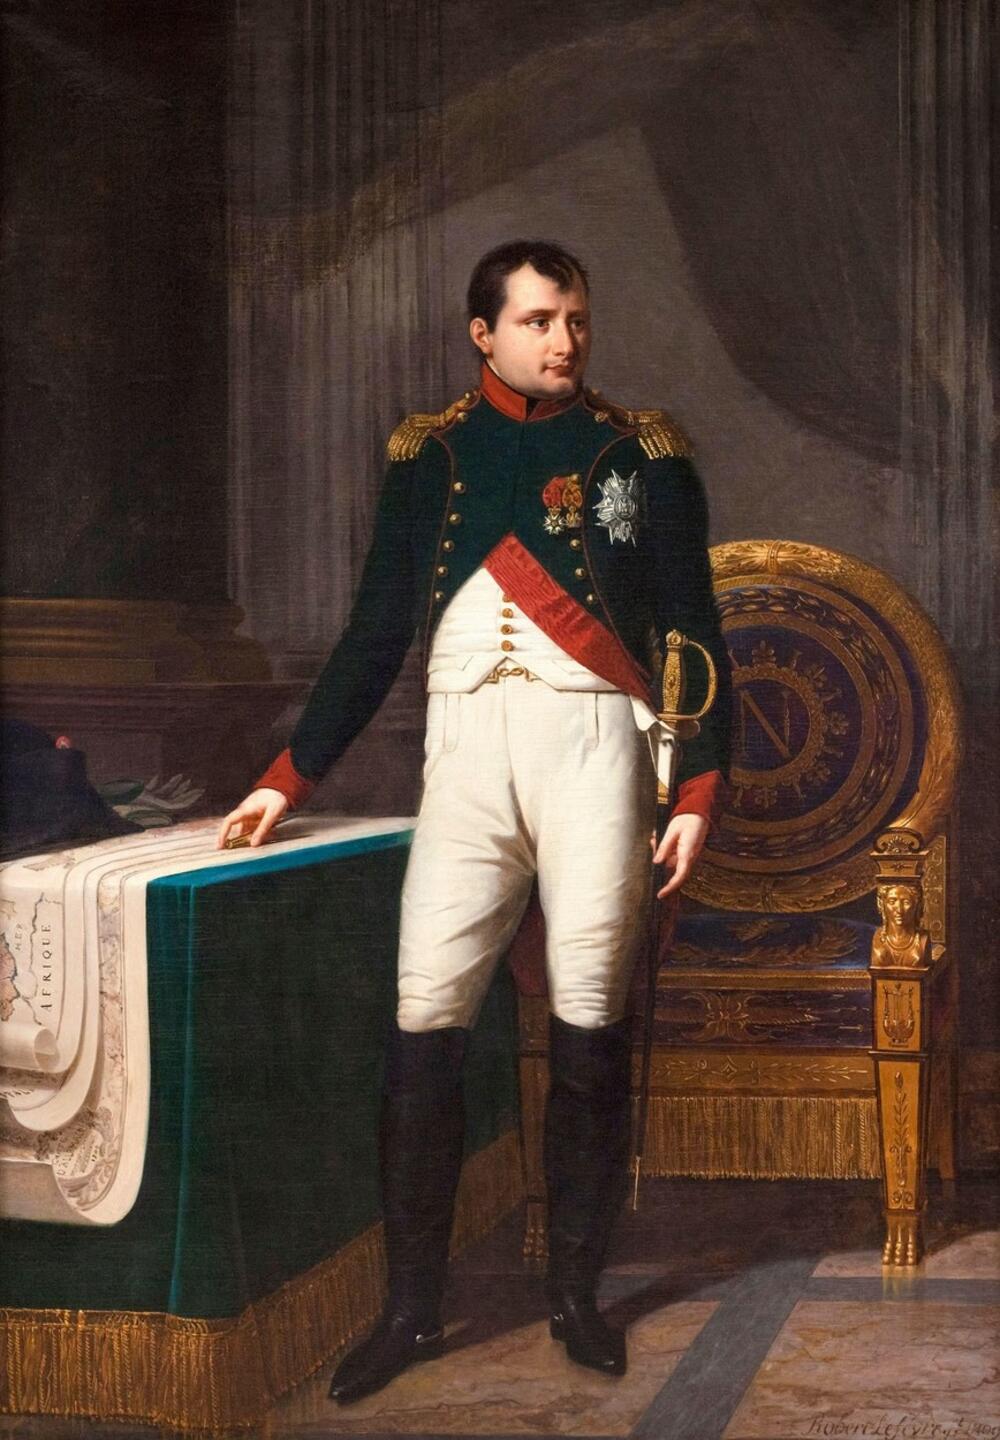 Napoleon Bonaparta, Napoleon Bonaparte